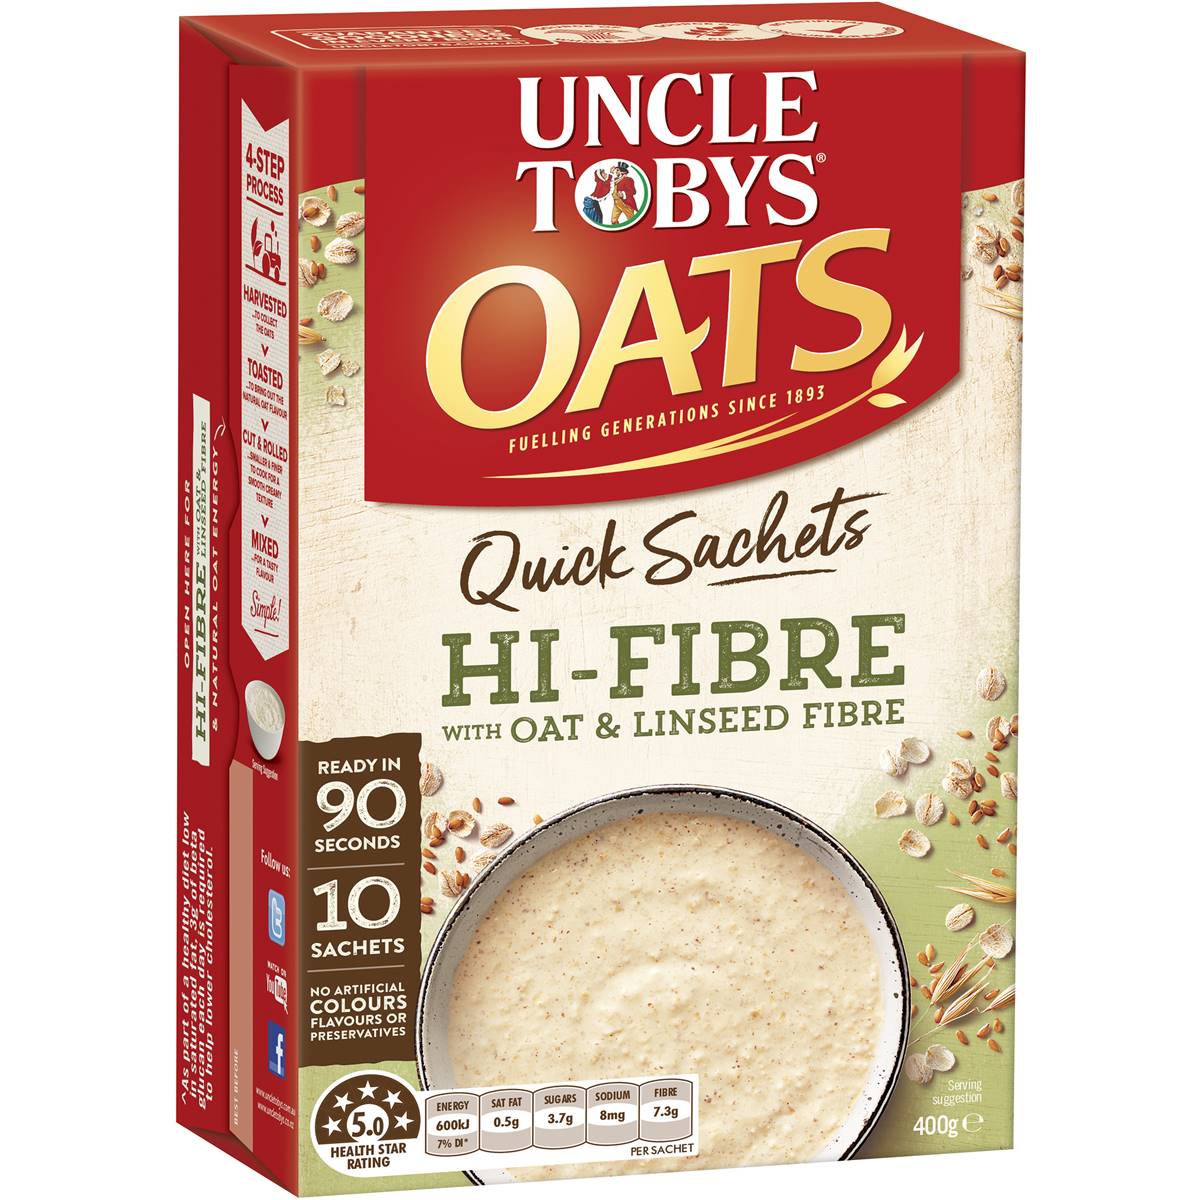 Calories in Uncle Tobys Oats Quick Sachets High Fibre Porridge